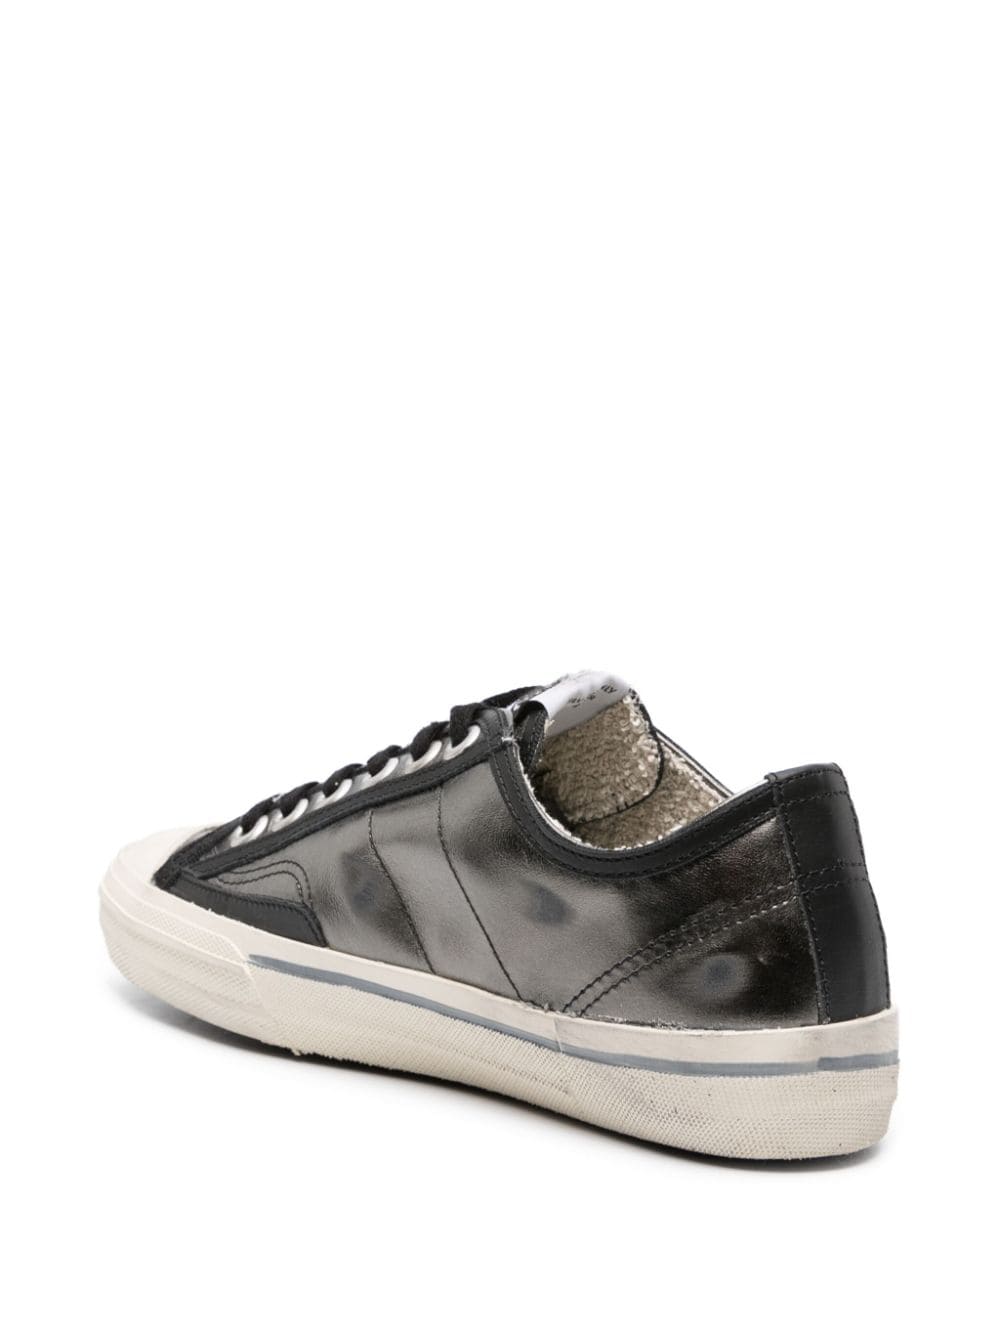 V-Star Sneaker in Dark Grey/Black